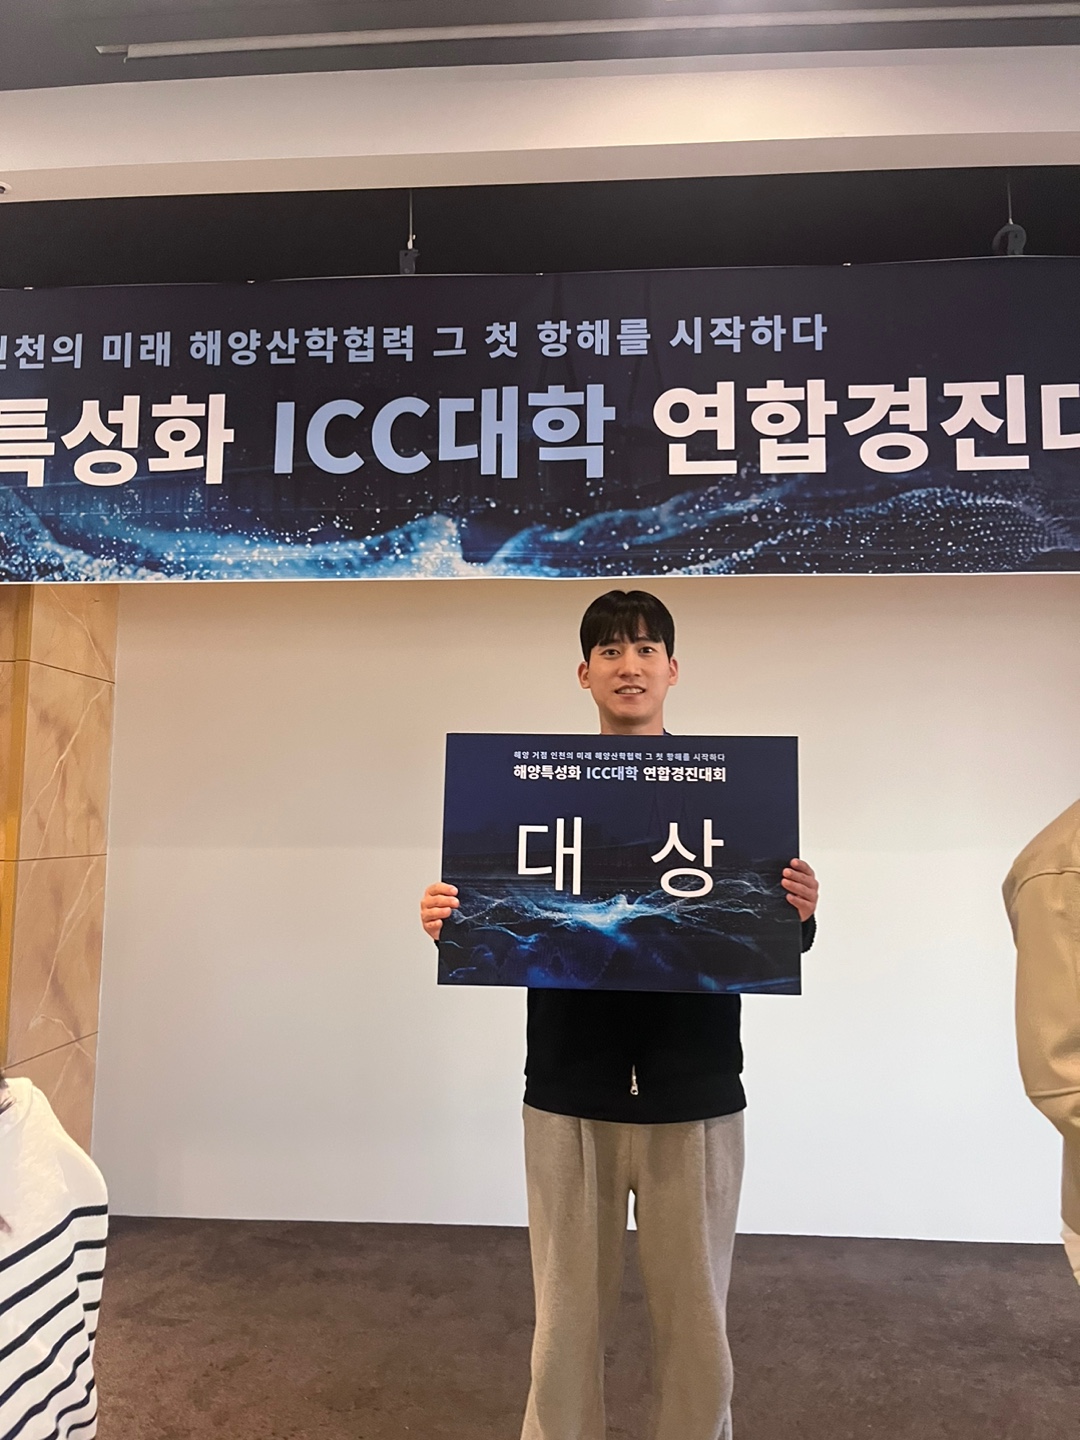 최성락 학생 '인천시 해양쓰레기와 관광산업연결' 주제로 발표하여 대상(총장상)을 수상